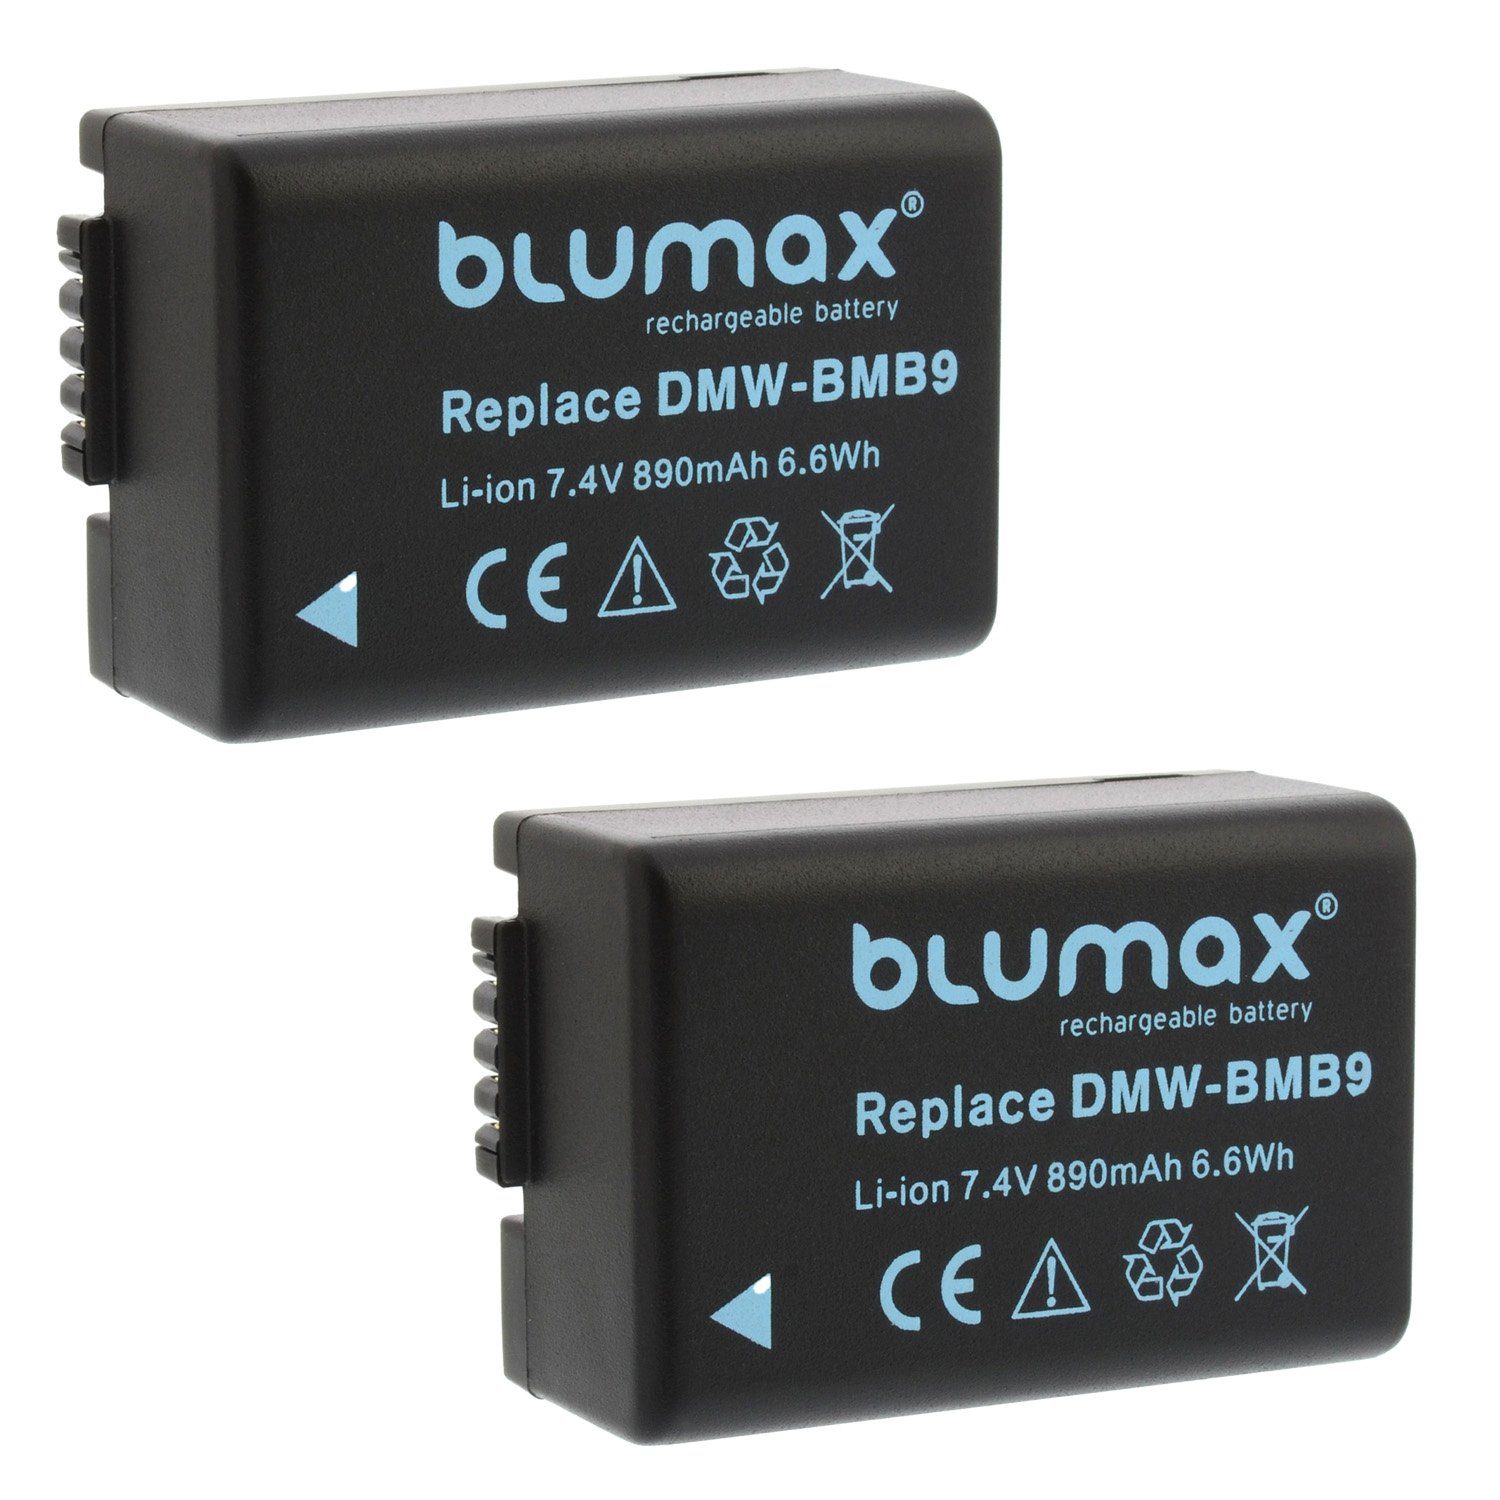 Blumax Set mit Lader DMW-BMB9 Kamera-Akku für Lumix 890mAh Panasonic